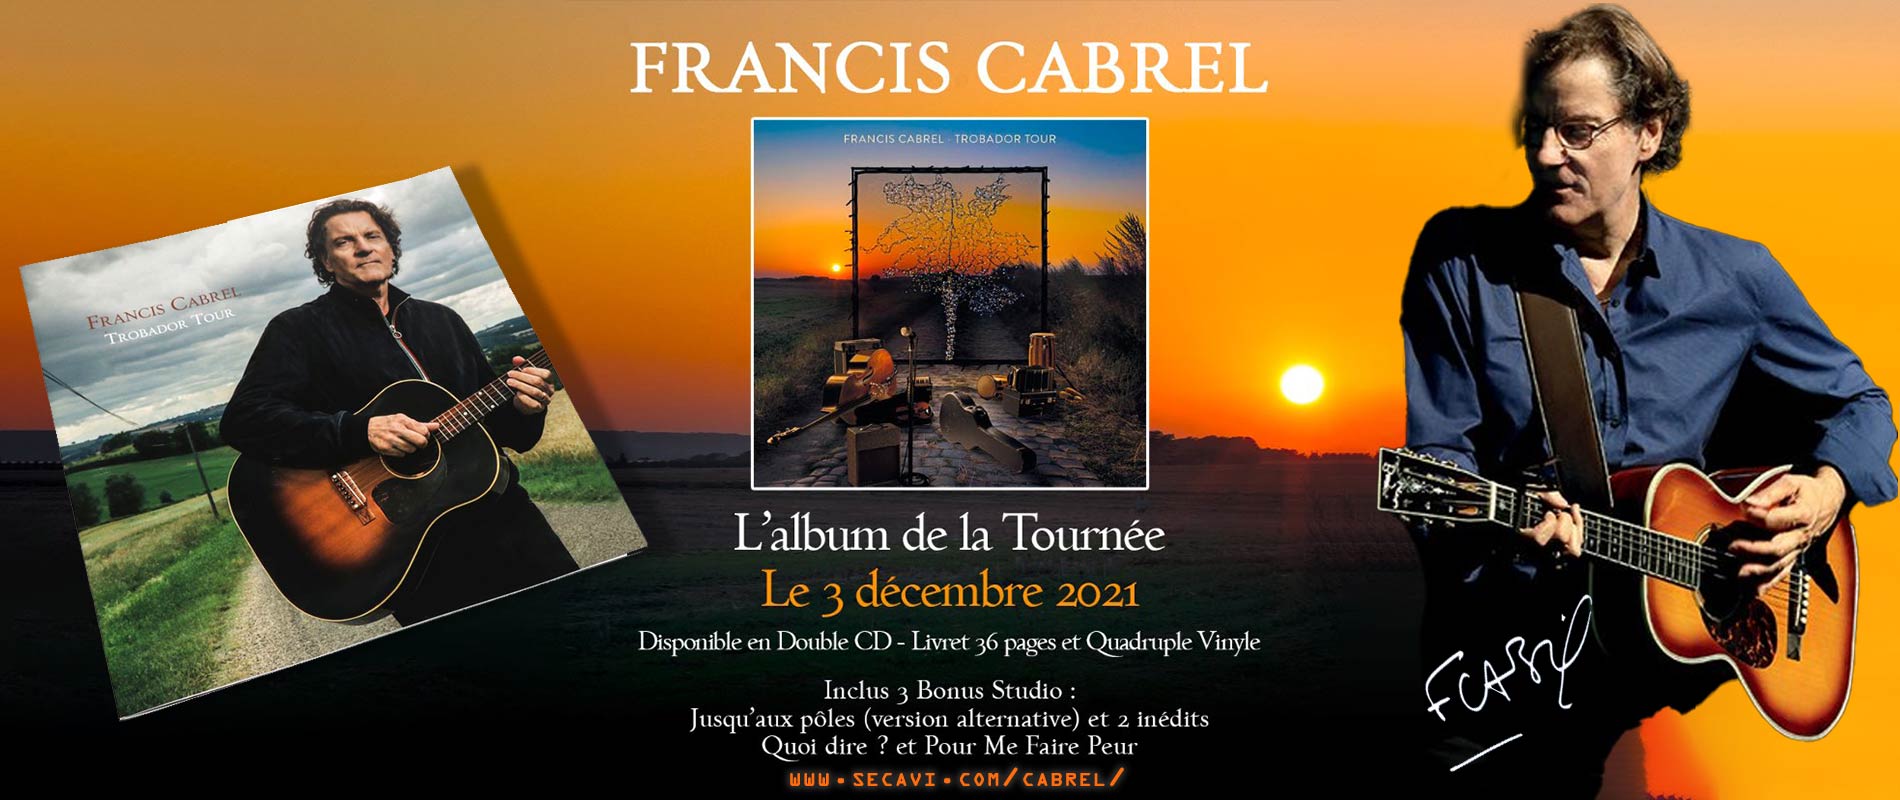 Francis Cabrel nouvel album